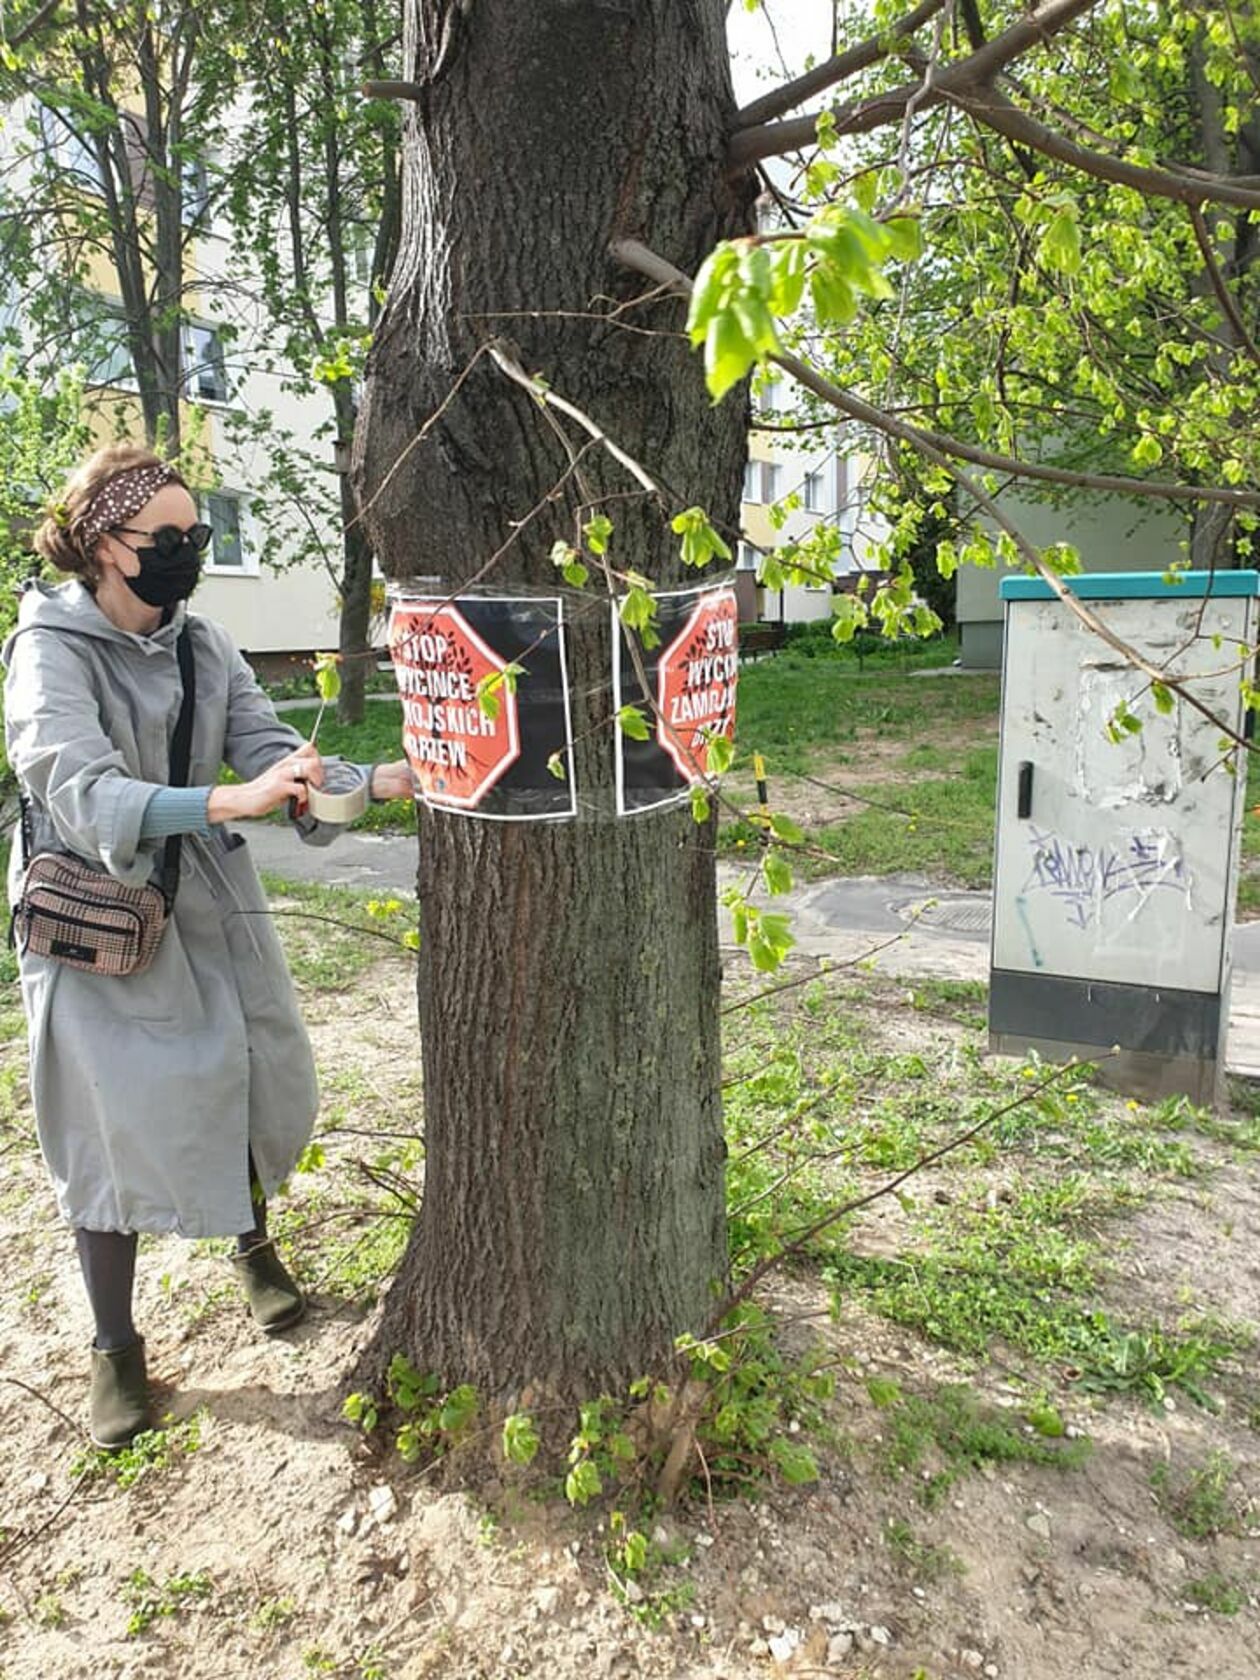 Wycinka drzew przy ul. Piłsudskiego w Zamościu i protest